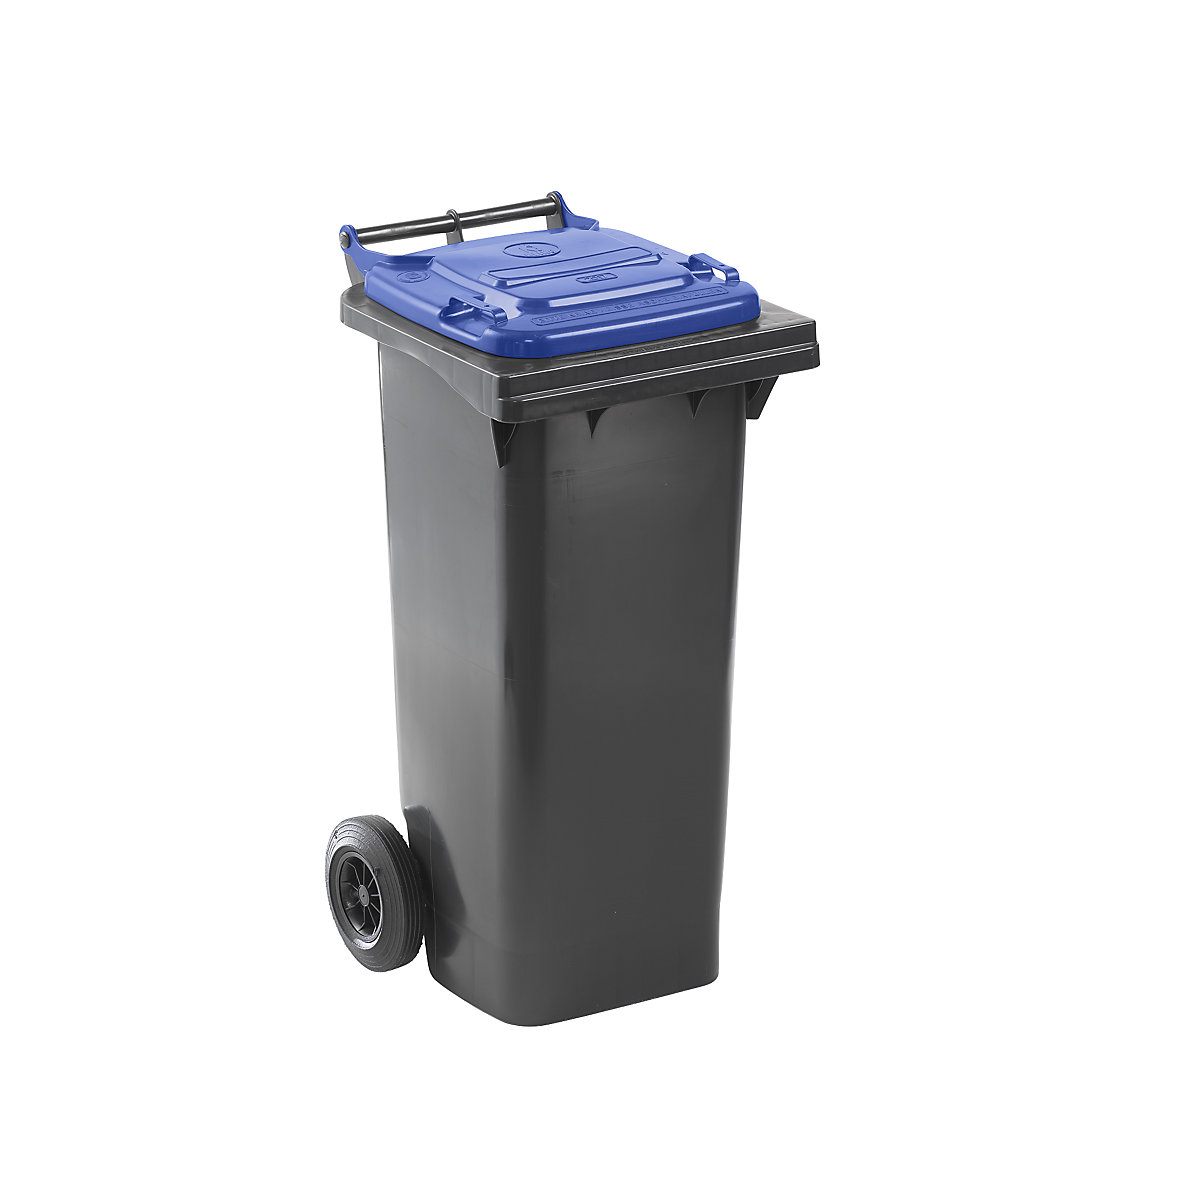 Contenedor de basura según DIN EN 840